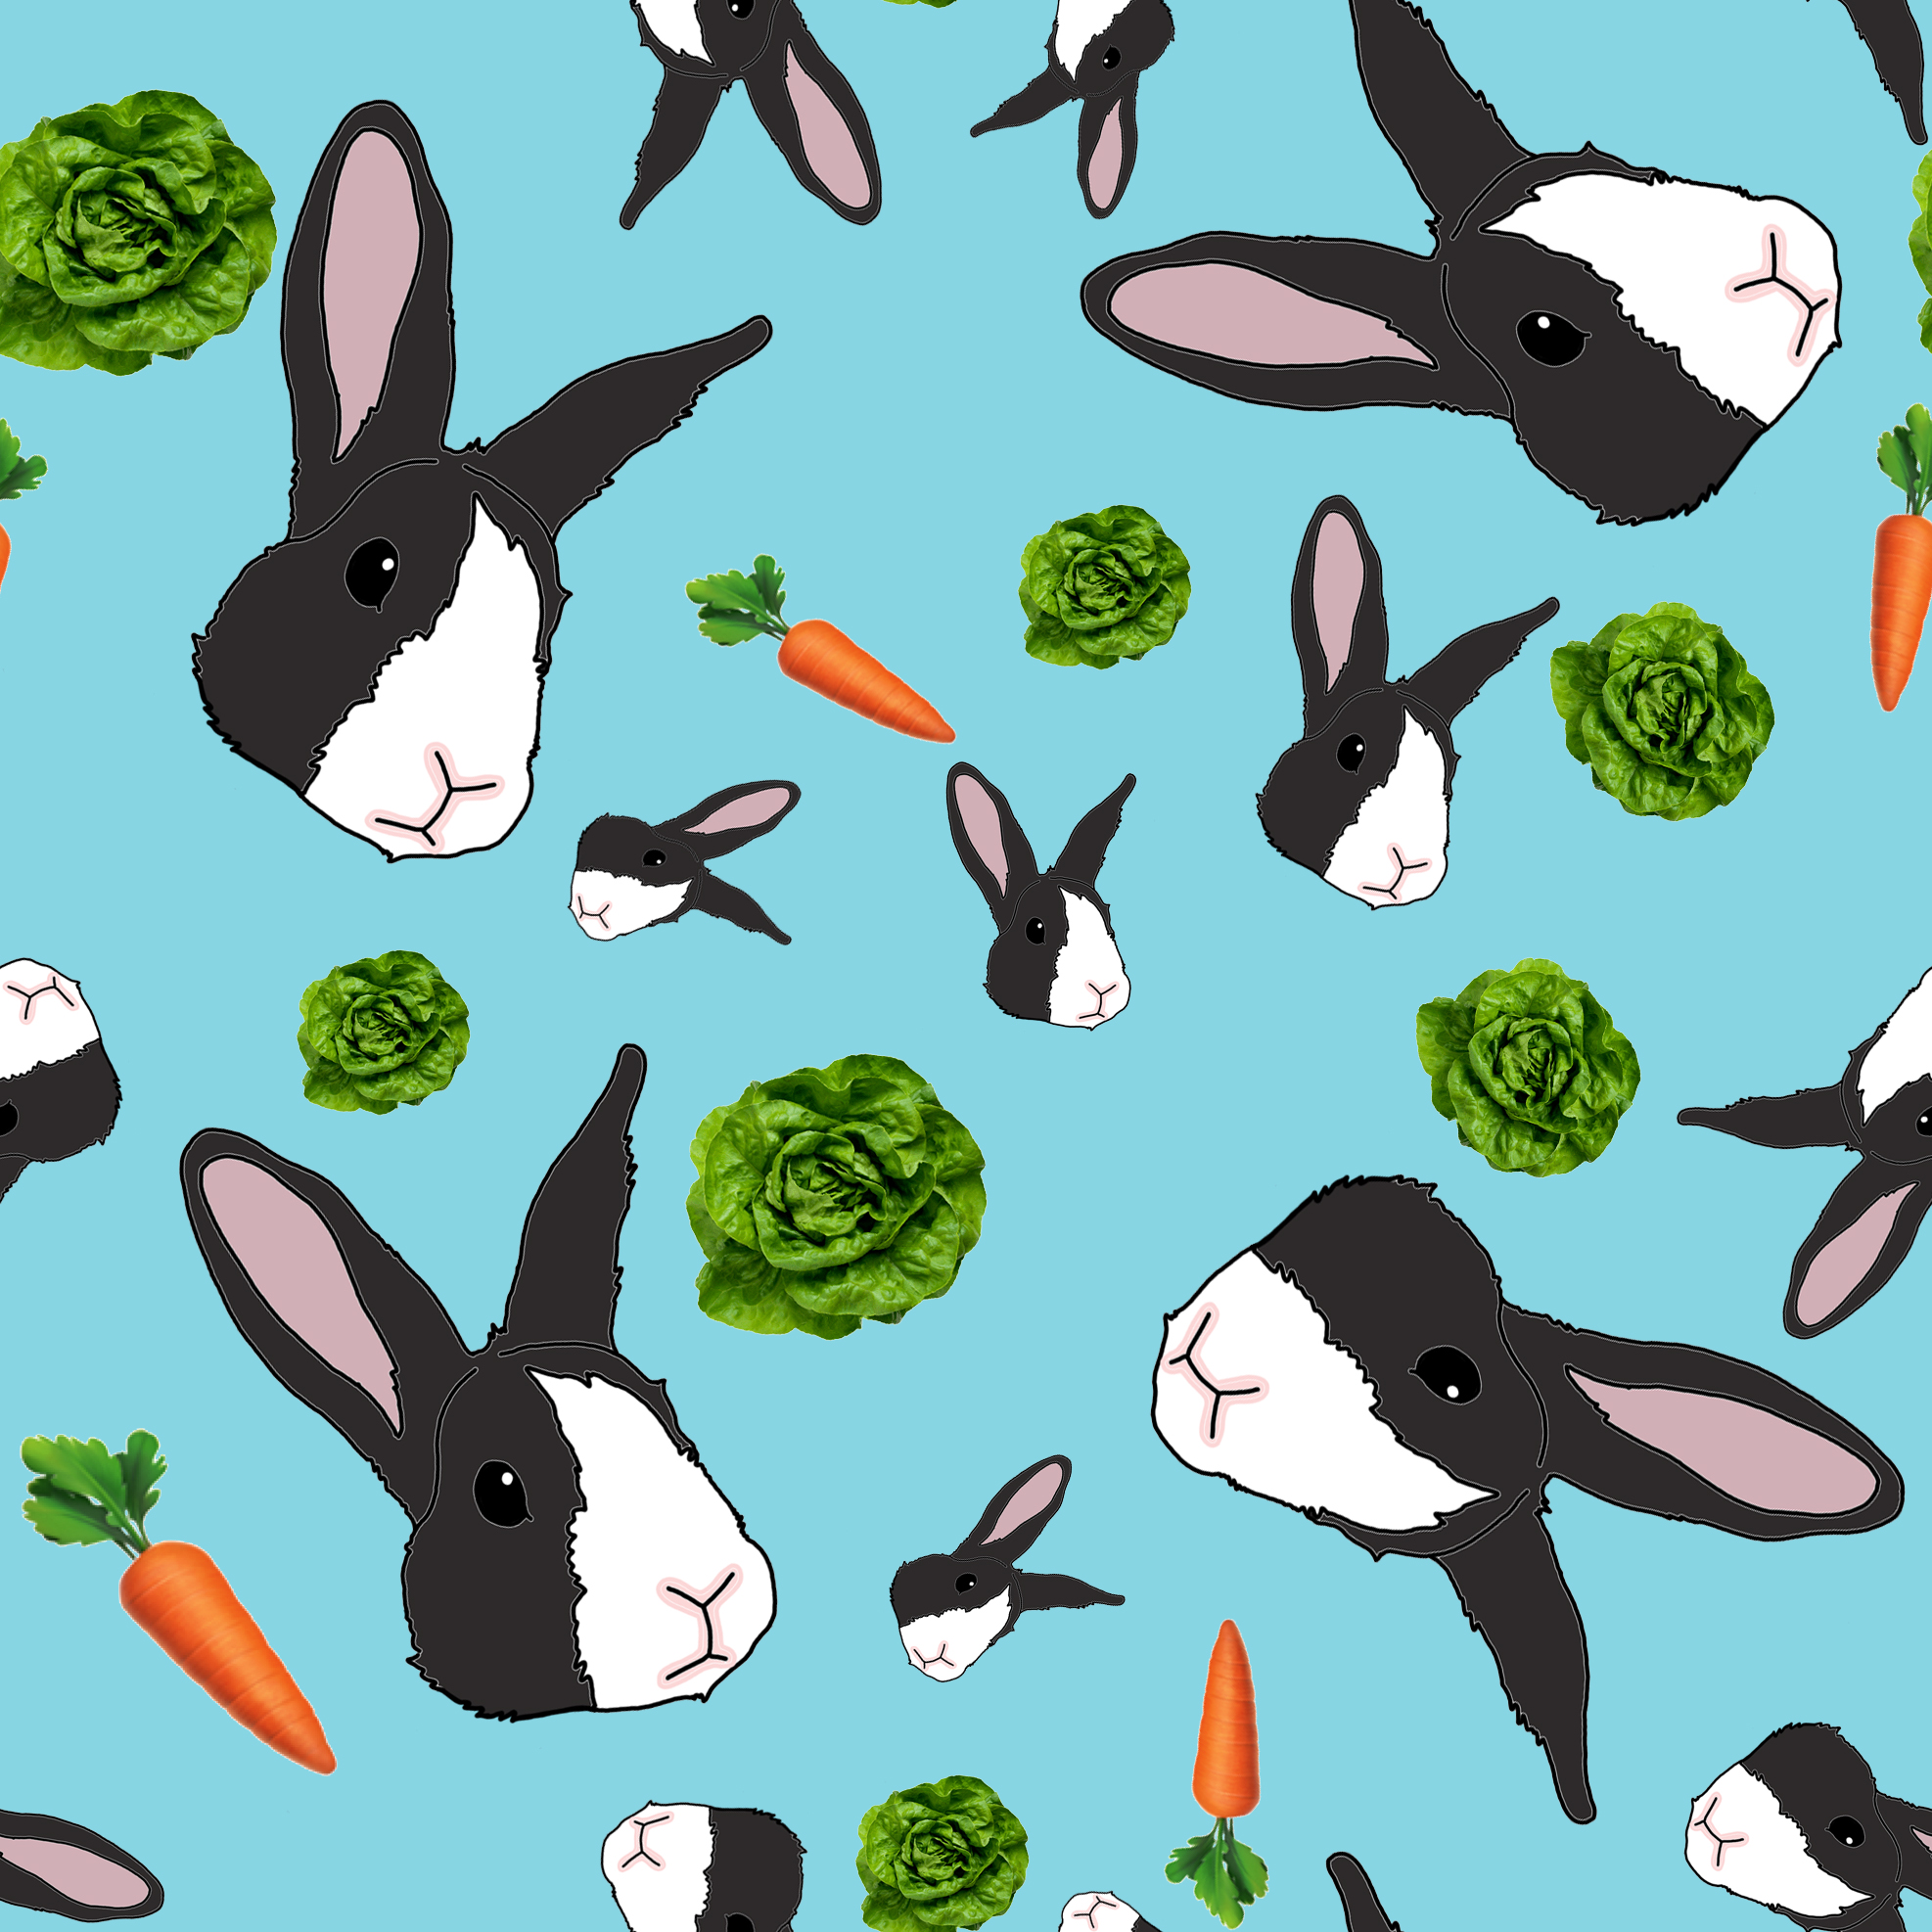 https://0201.nccdn.net/1_2/000/000/145/9a4/petunia-rabbit-pattern-tile.jpg